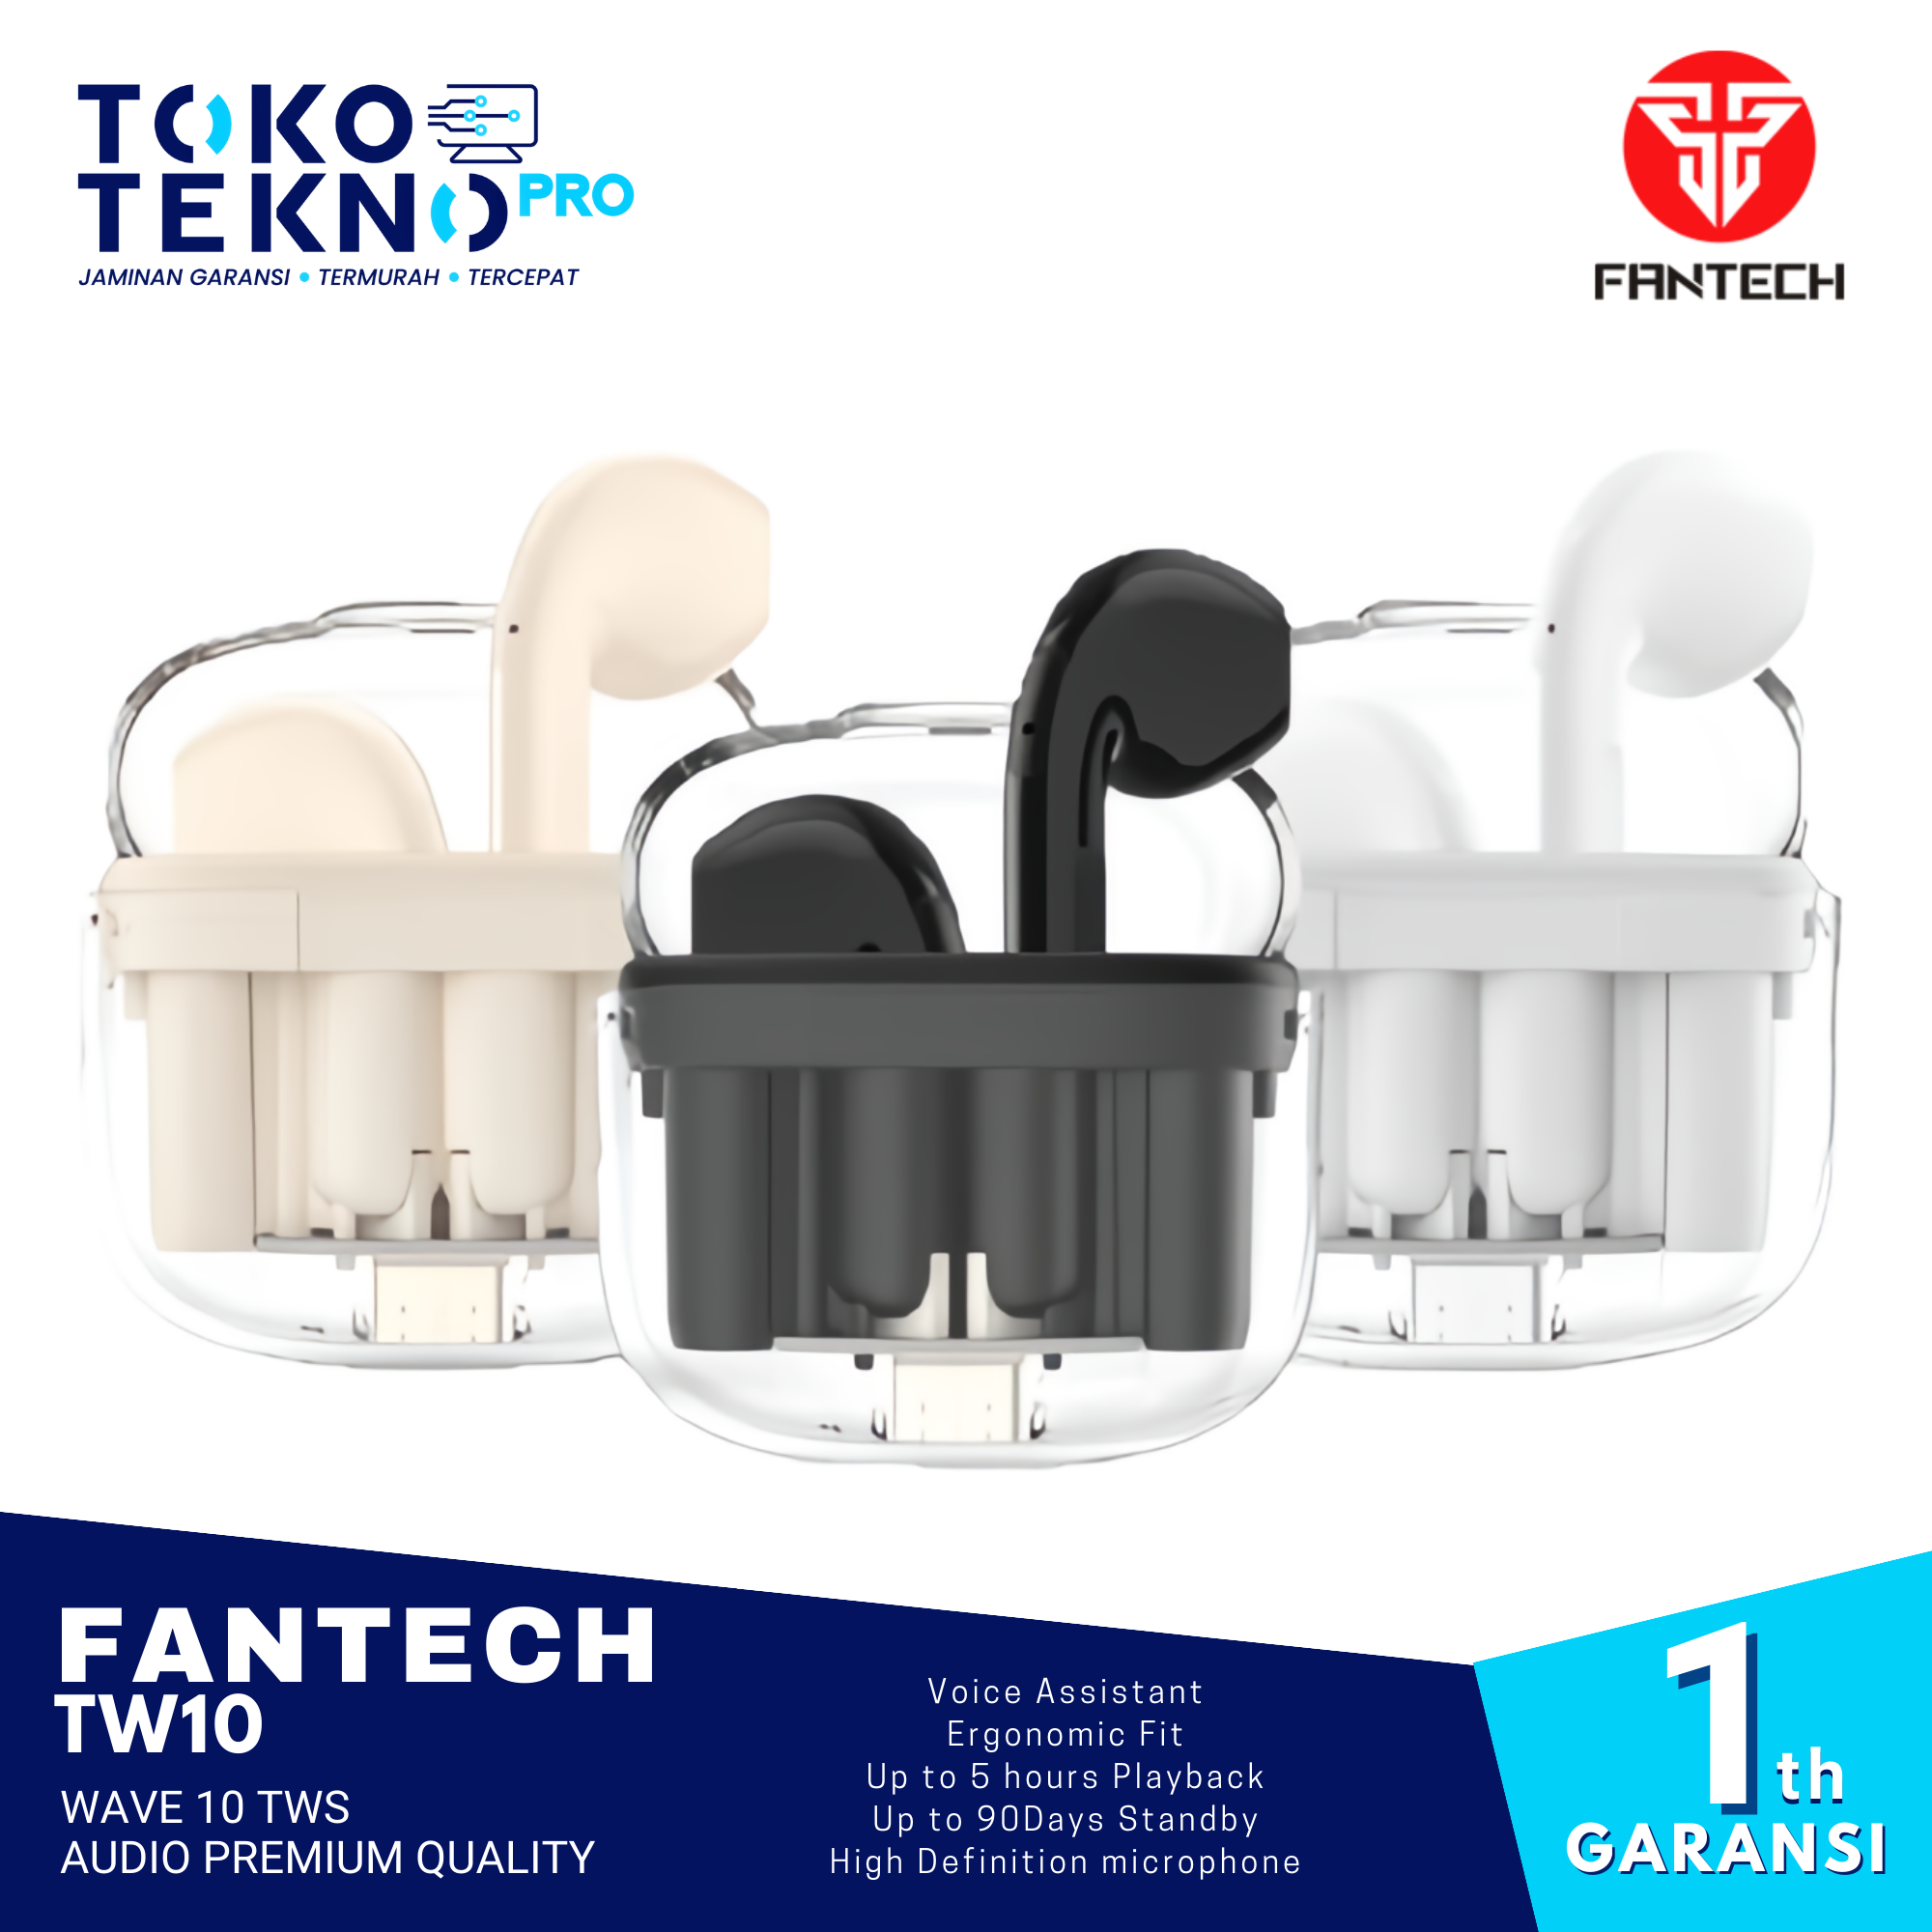 Fantech TW10 Wave 10 TWS